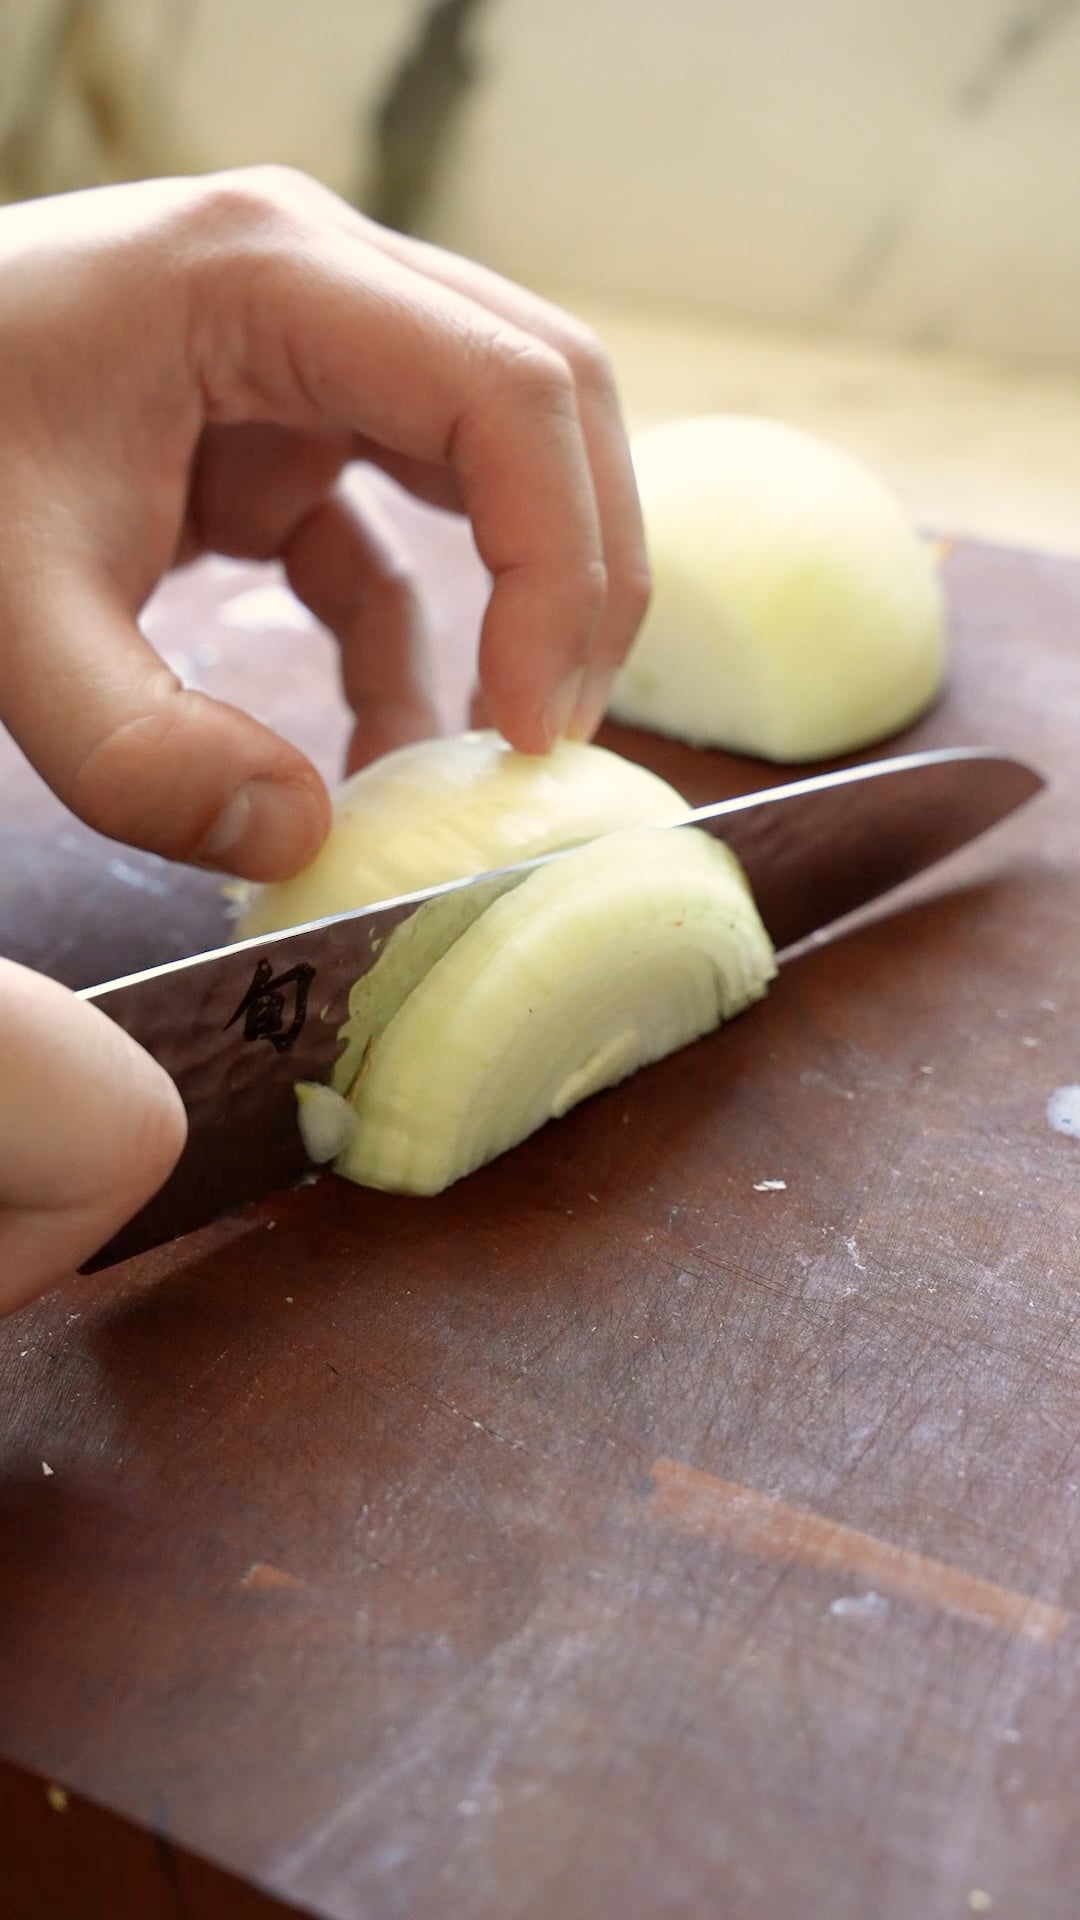 Onions being cut on a cutting board.